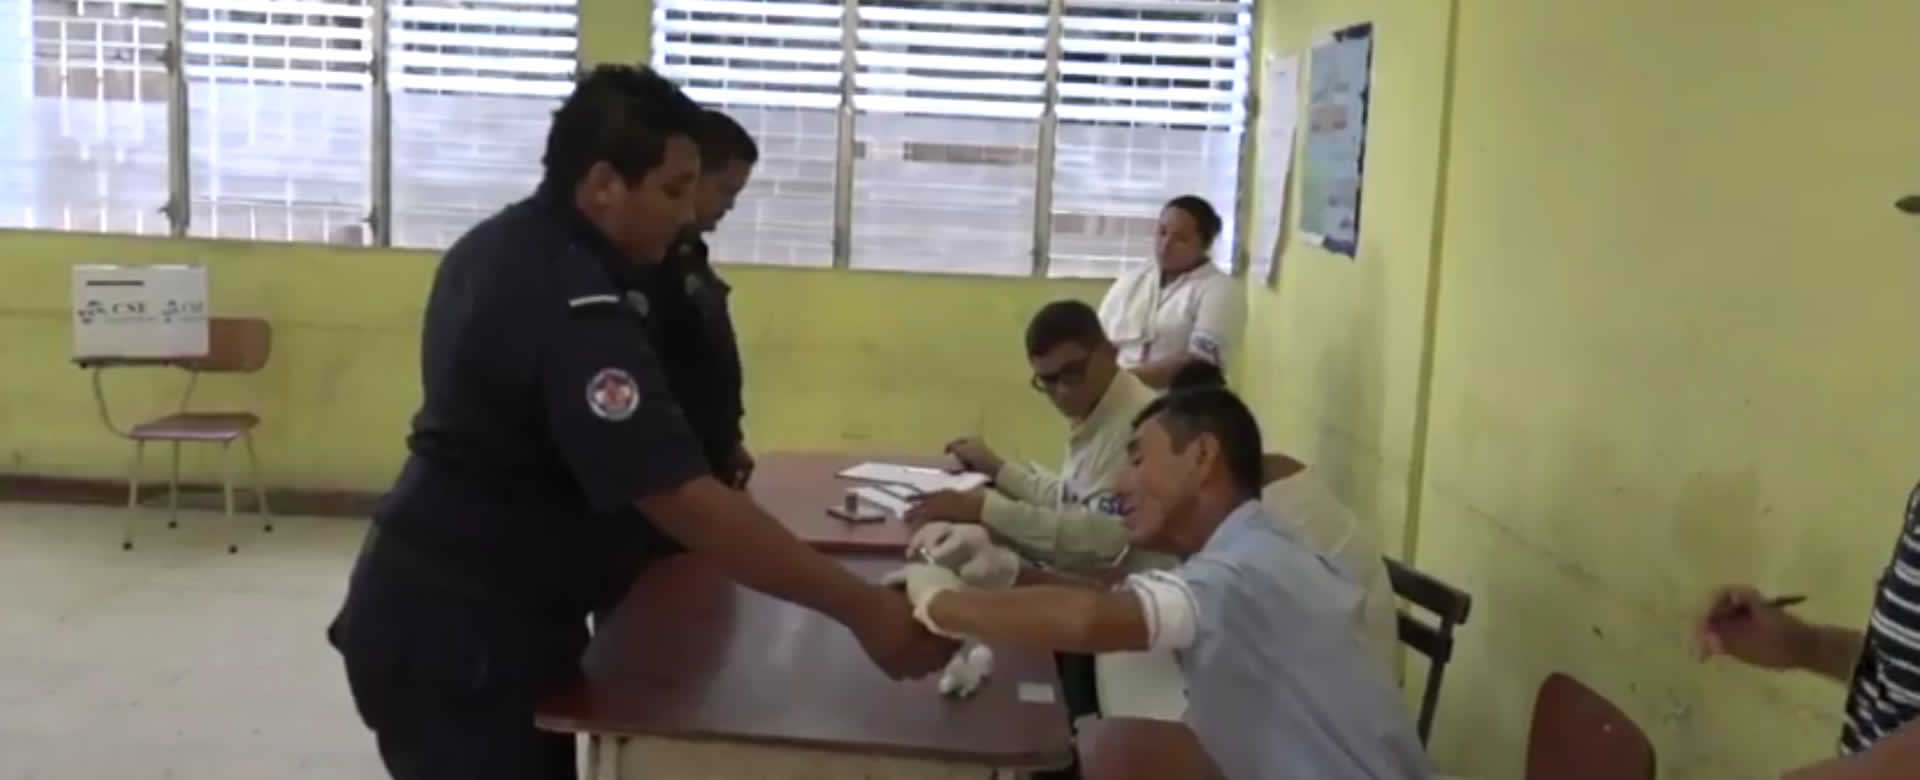 Población en Ciudad Sandino acude al Colegio Público Augusto C. Sandino a depositar su voto